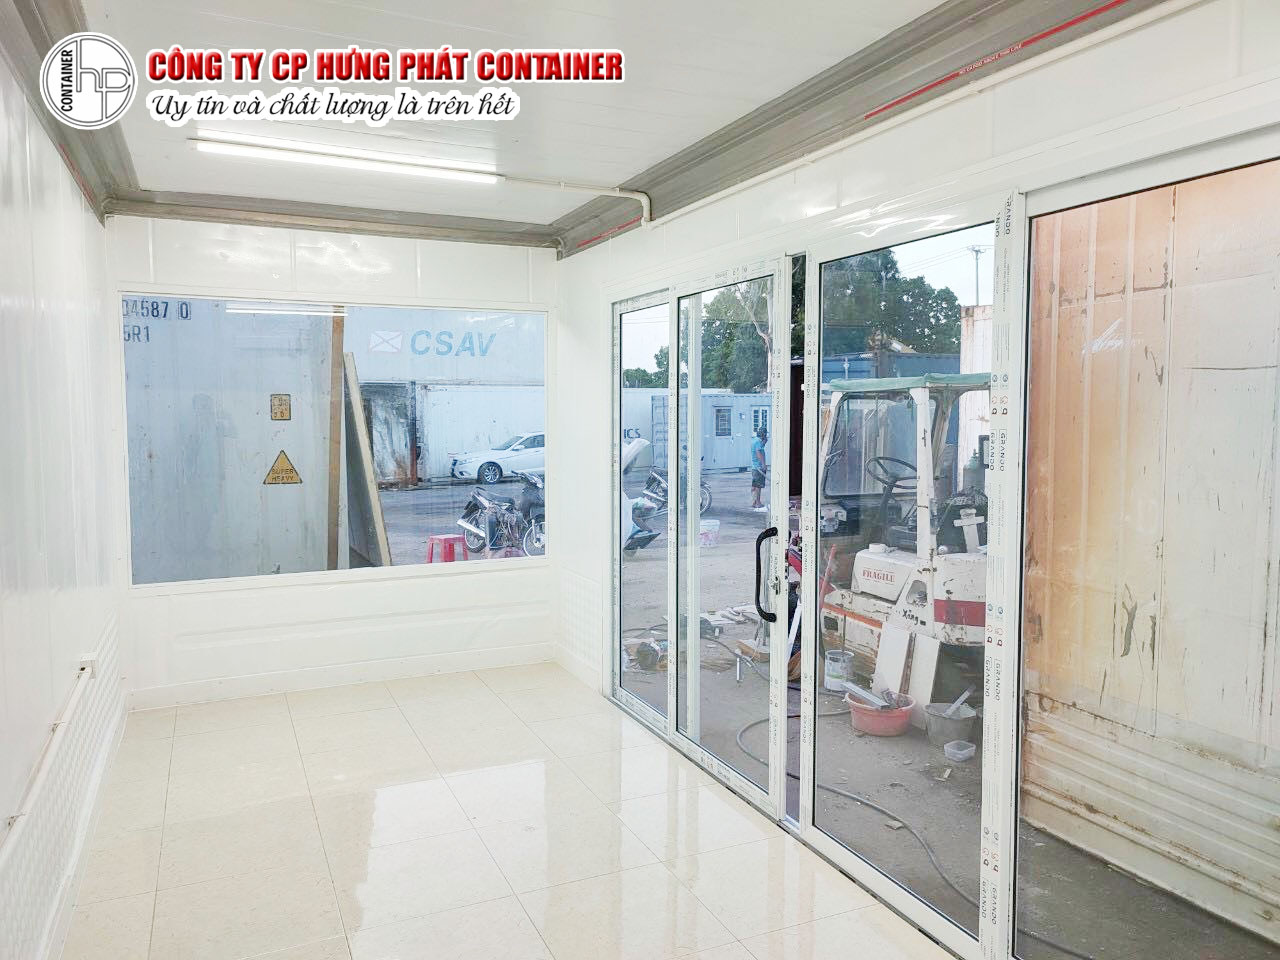 Đèn trong container văn phòng của Hưng Phát Container là loại nào?